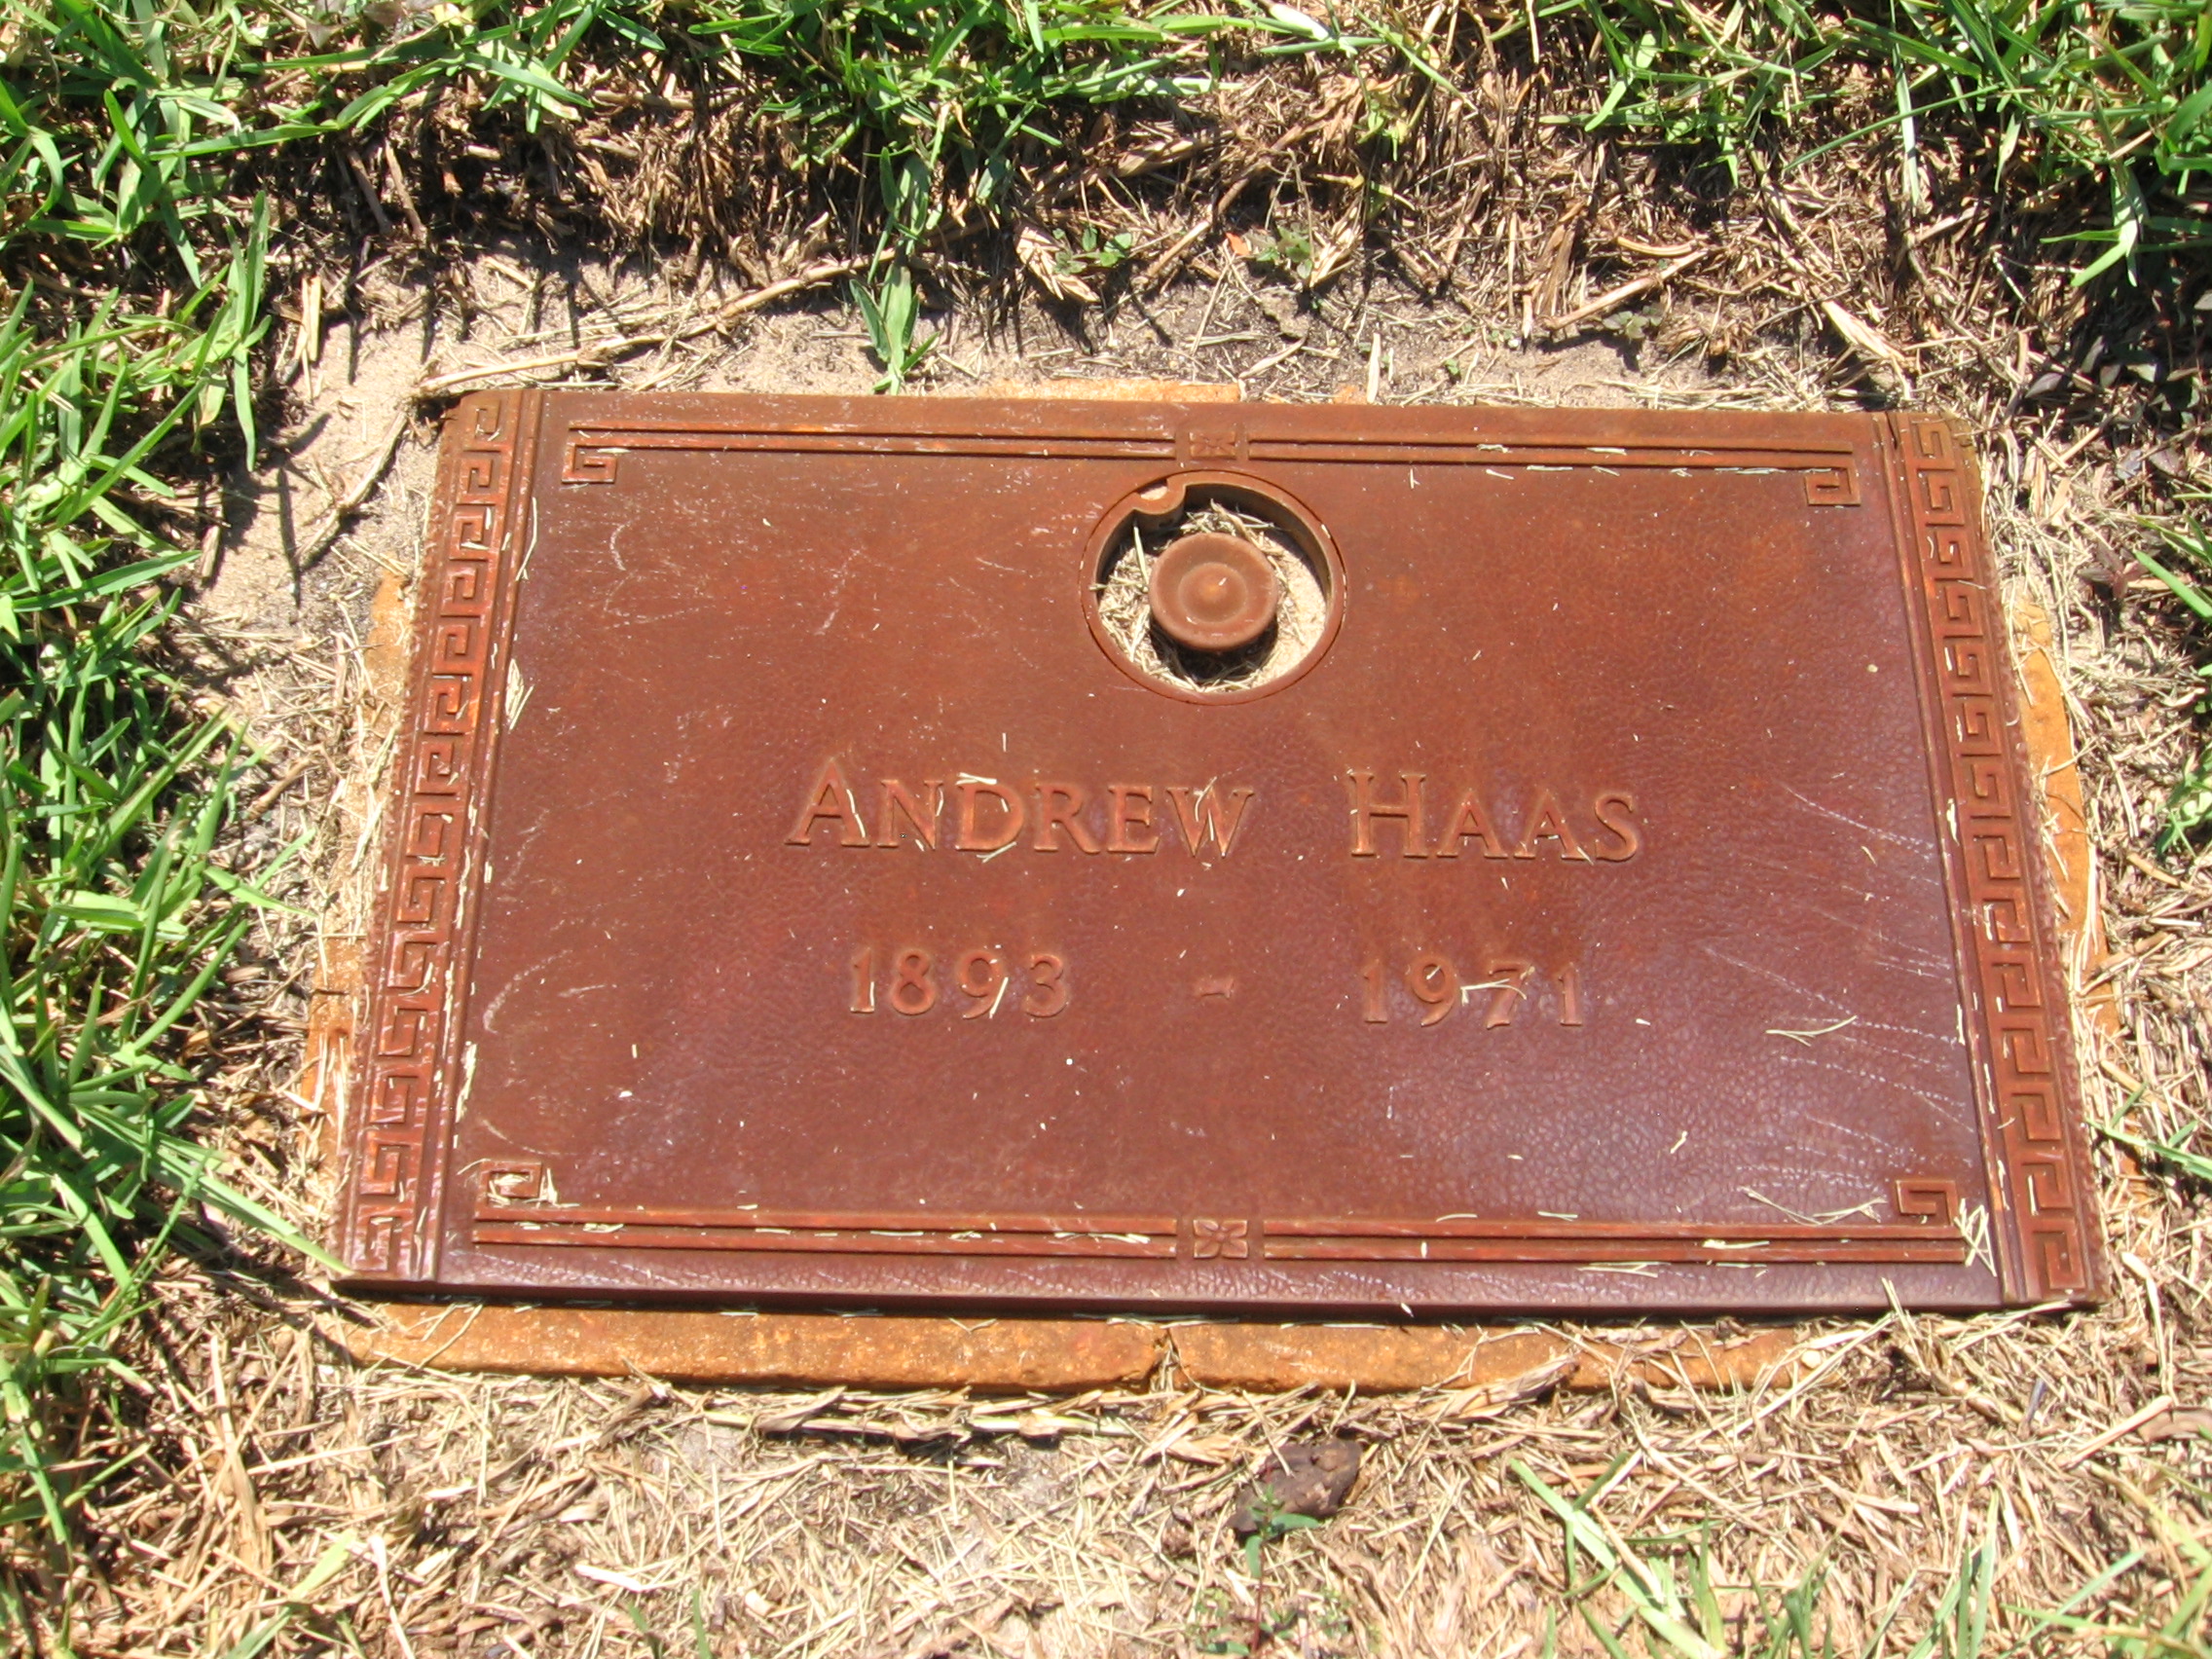 Andrew Haas